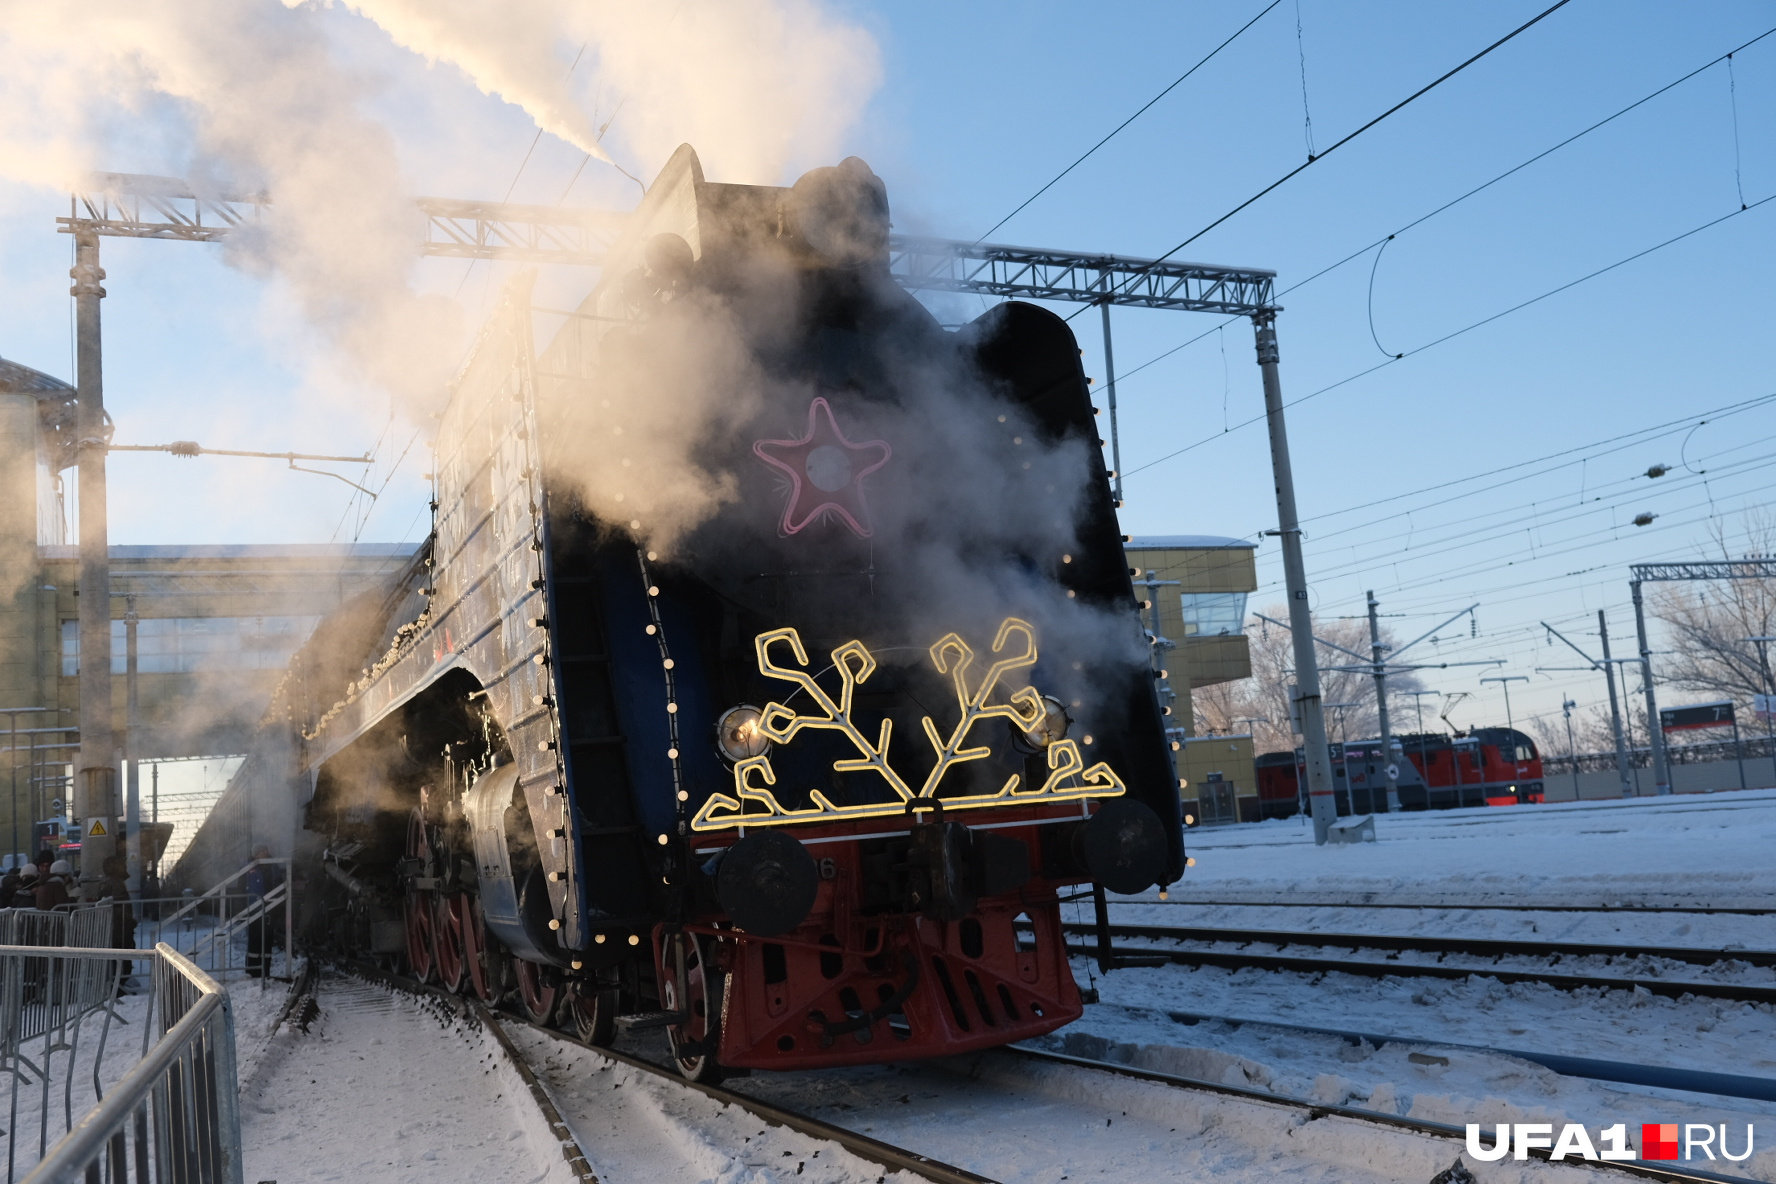 Спереди поезд украшен светящейся снежинкой